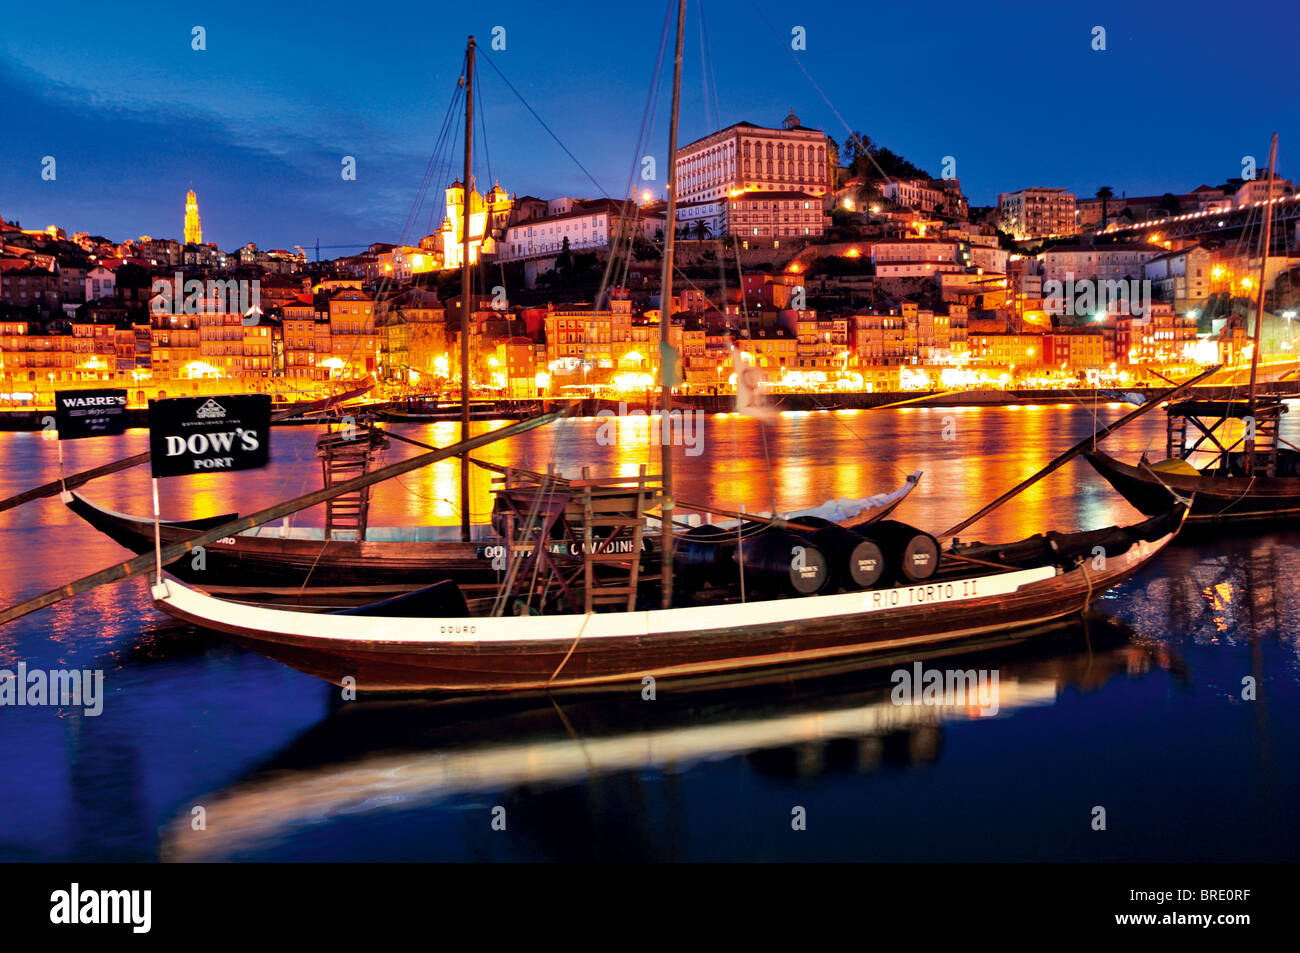 Portugal : Vue nocturne du port historique de navires Barcos rabelos Vin de Porto et à la marge du fleuve Douro Banque D'Images